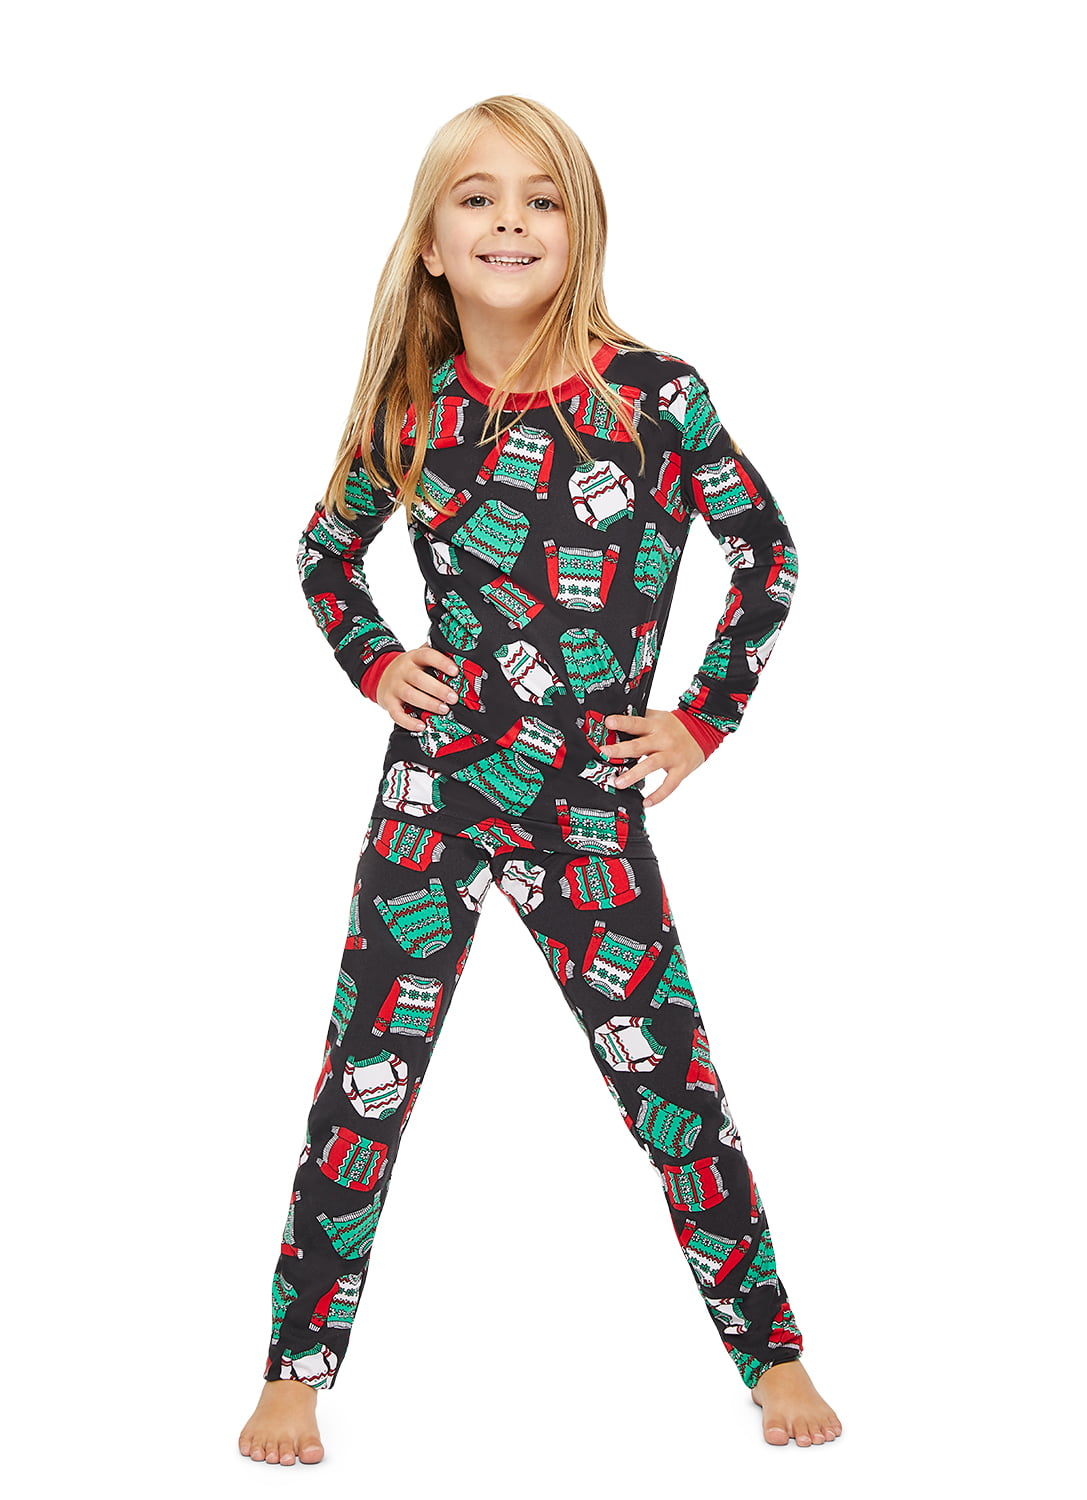 Family Ugly Sweater Party Matching Pajamas - Kids Unisex 2-Piece Pajama ...